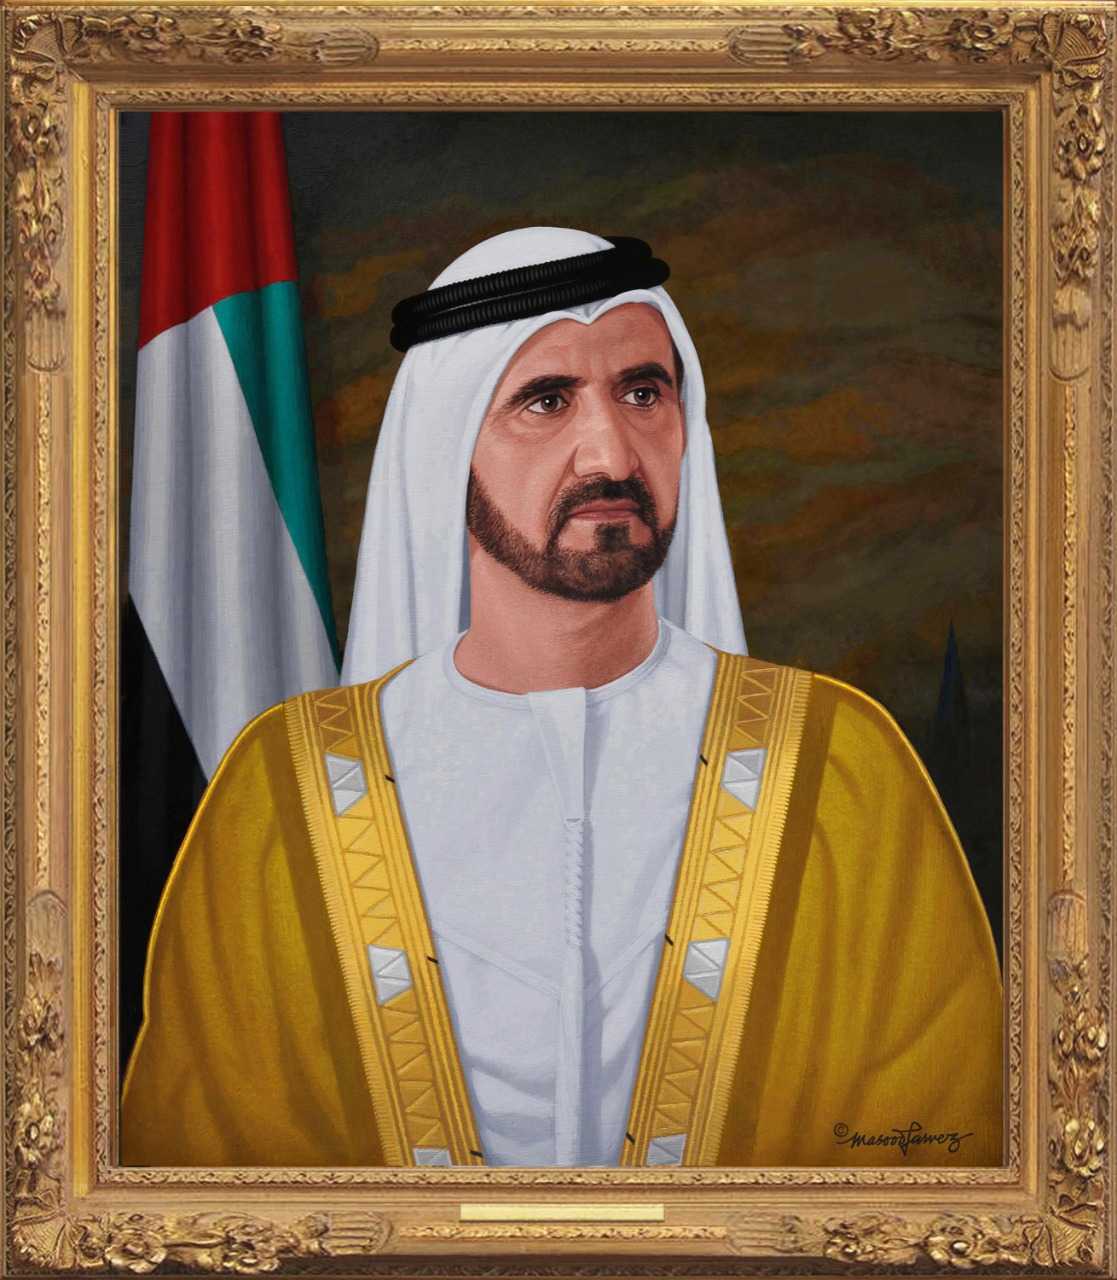 His HighnessSheikh Mohammed bin Rashid Al Maktoum